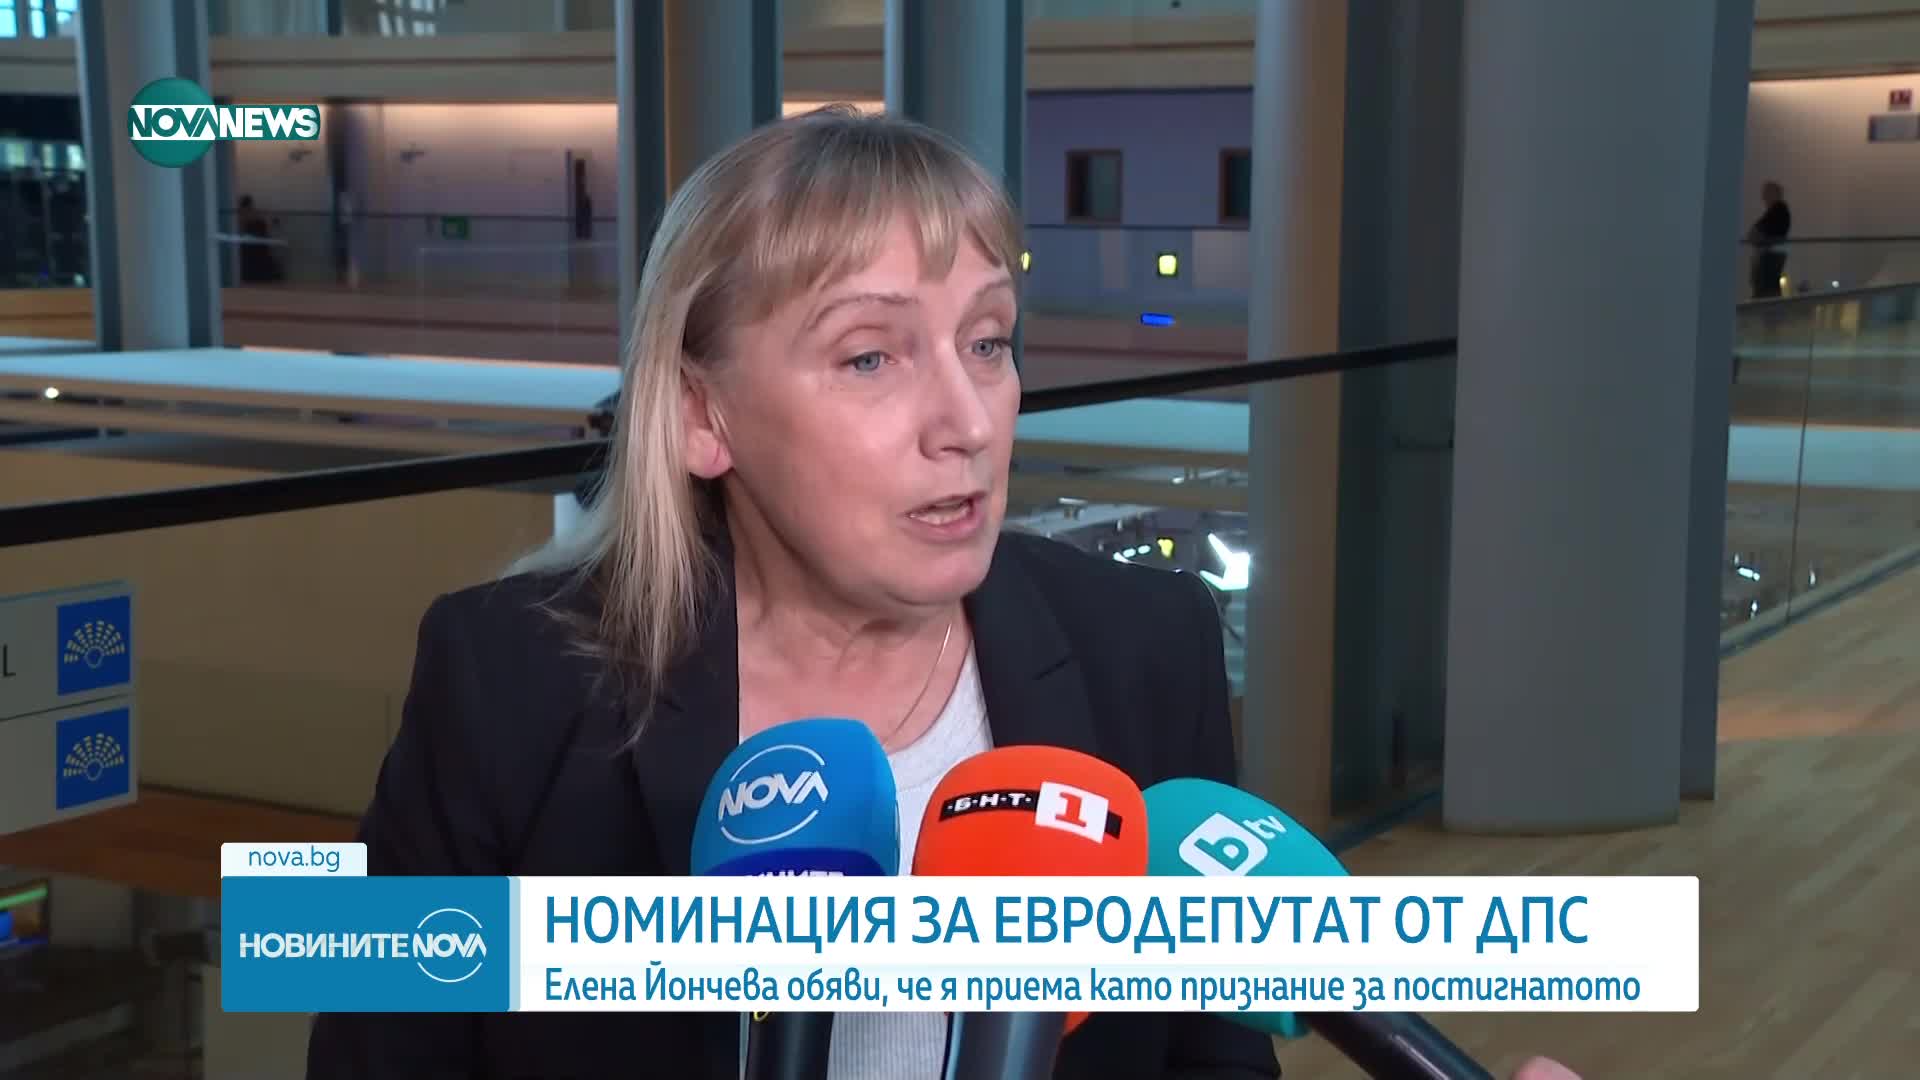 Йончева: ДПС ми гарантира свободата да продължа своите битки в ЕП